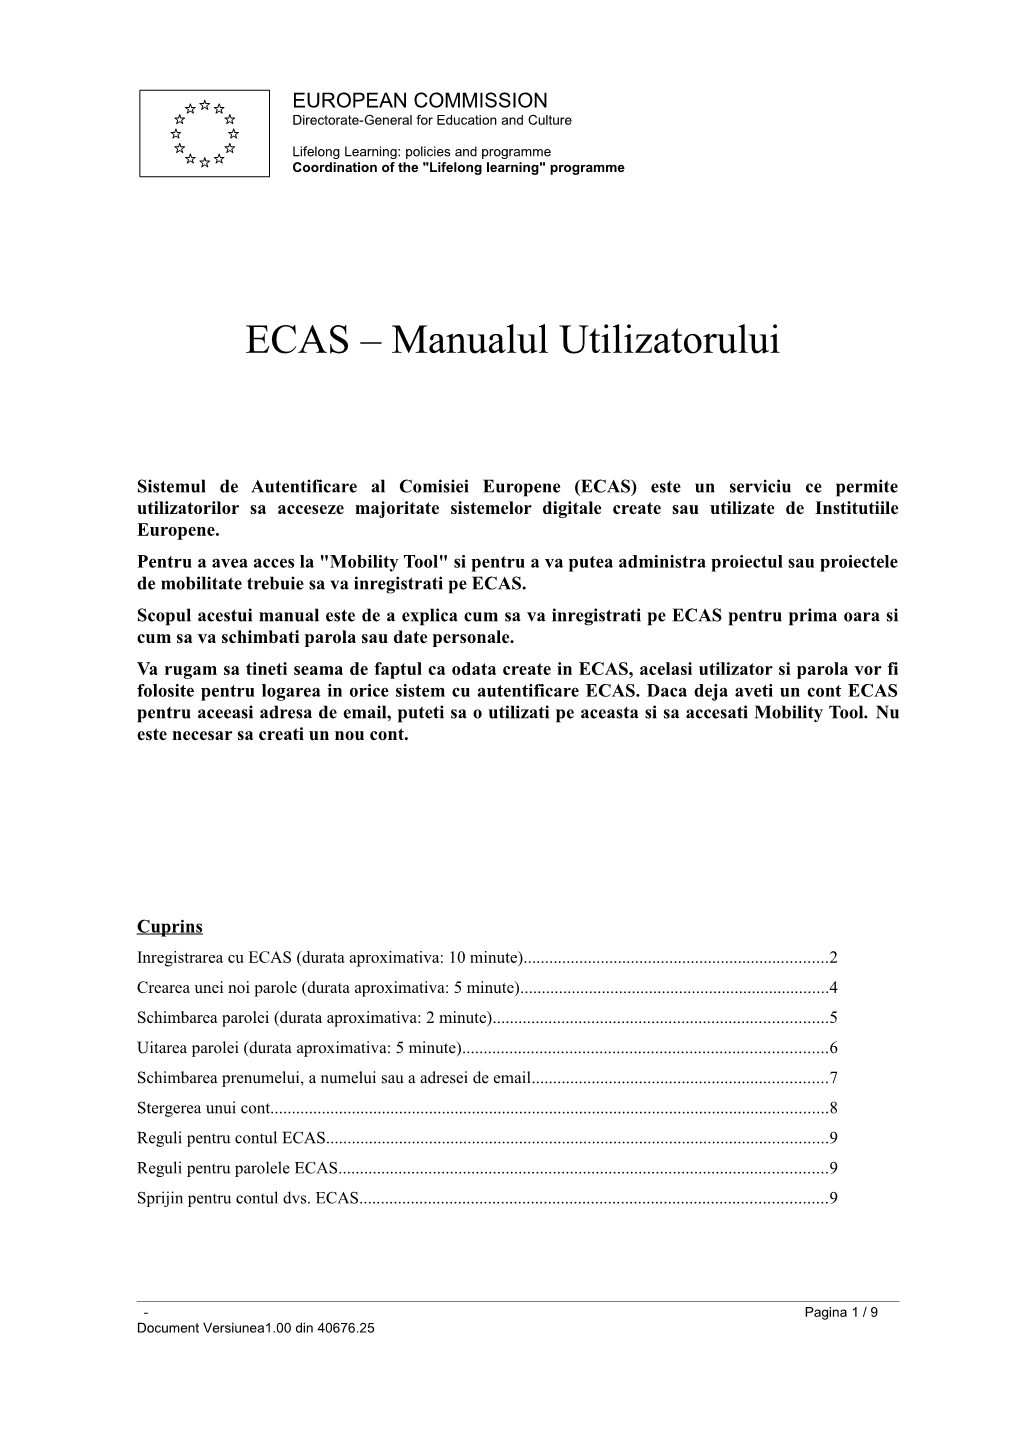 ECAS Manualul Utilizatorului